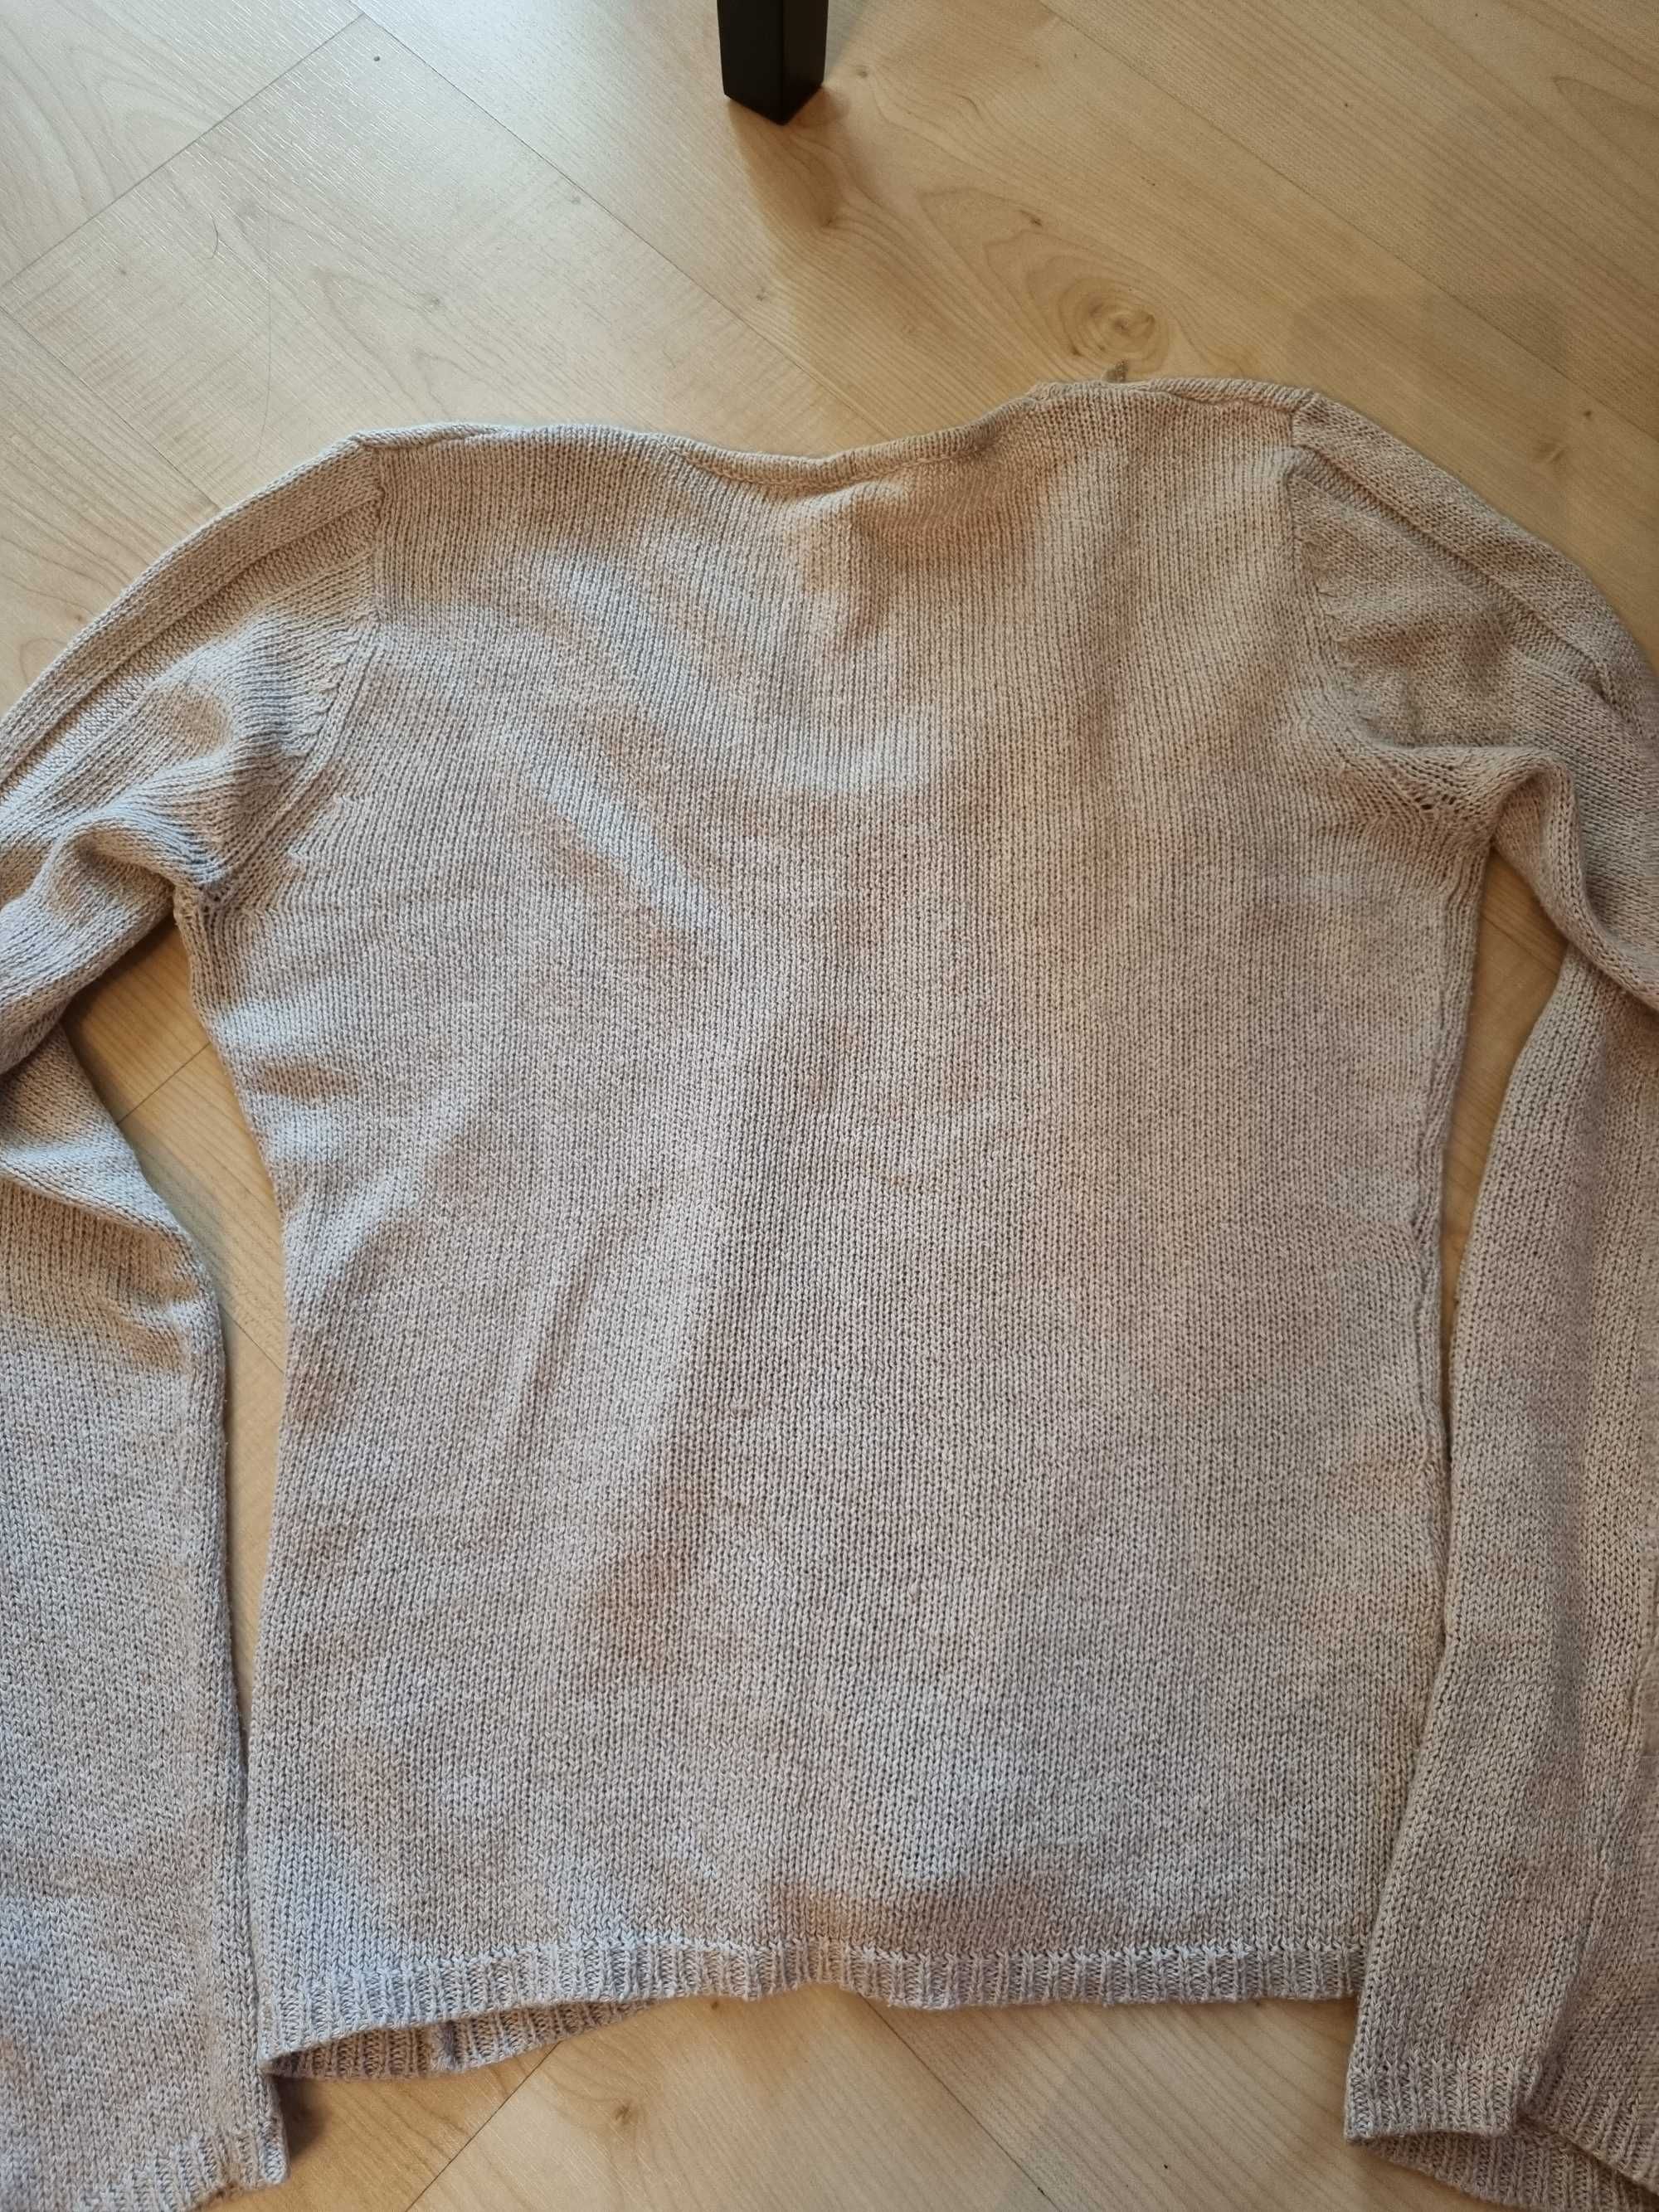 Azurowy beżowy sweter z kamyczkami, rozmiar M